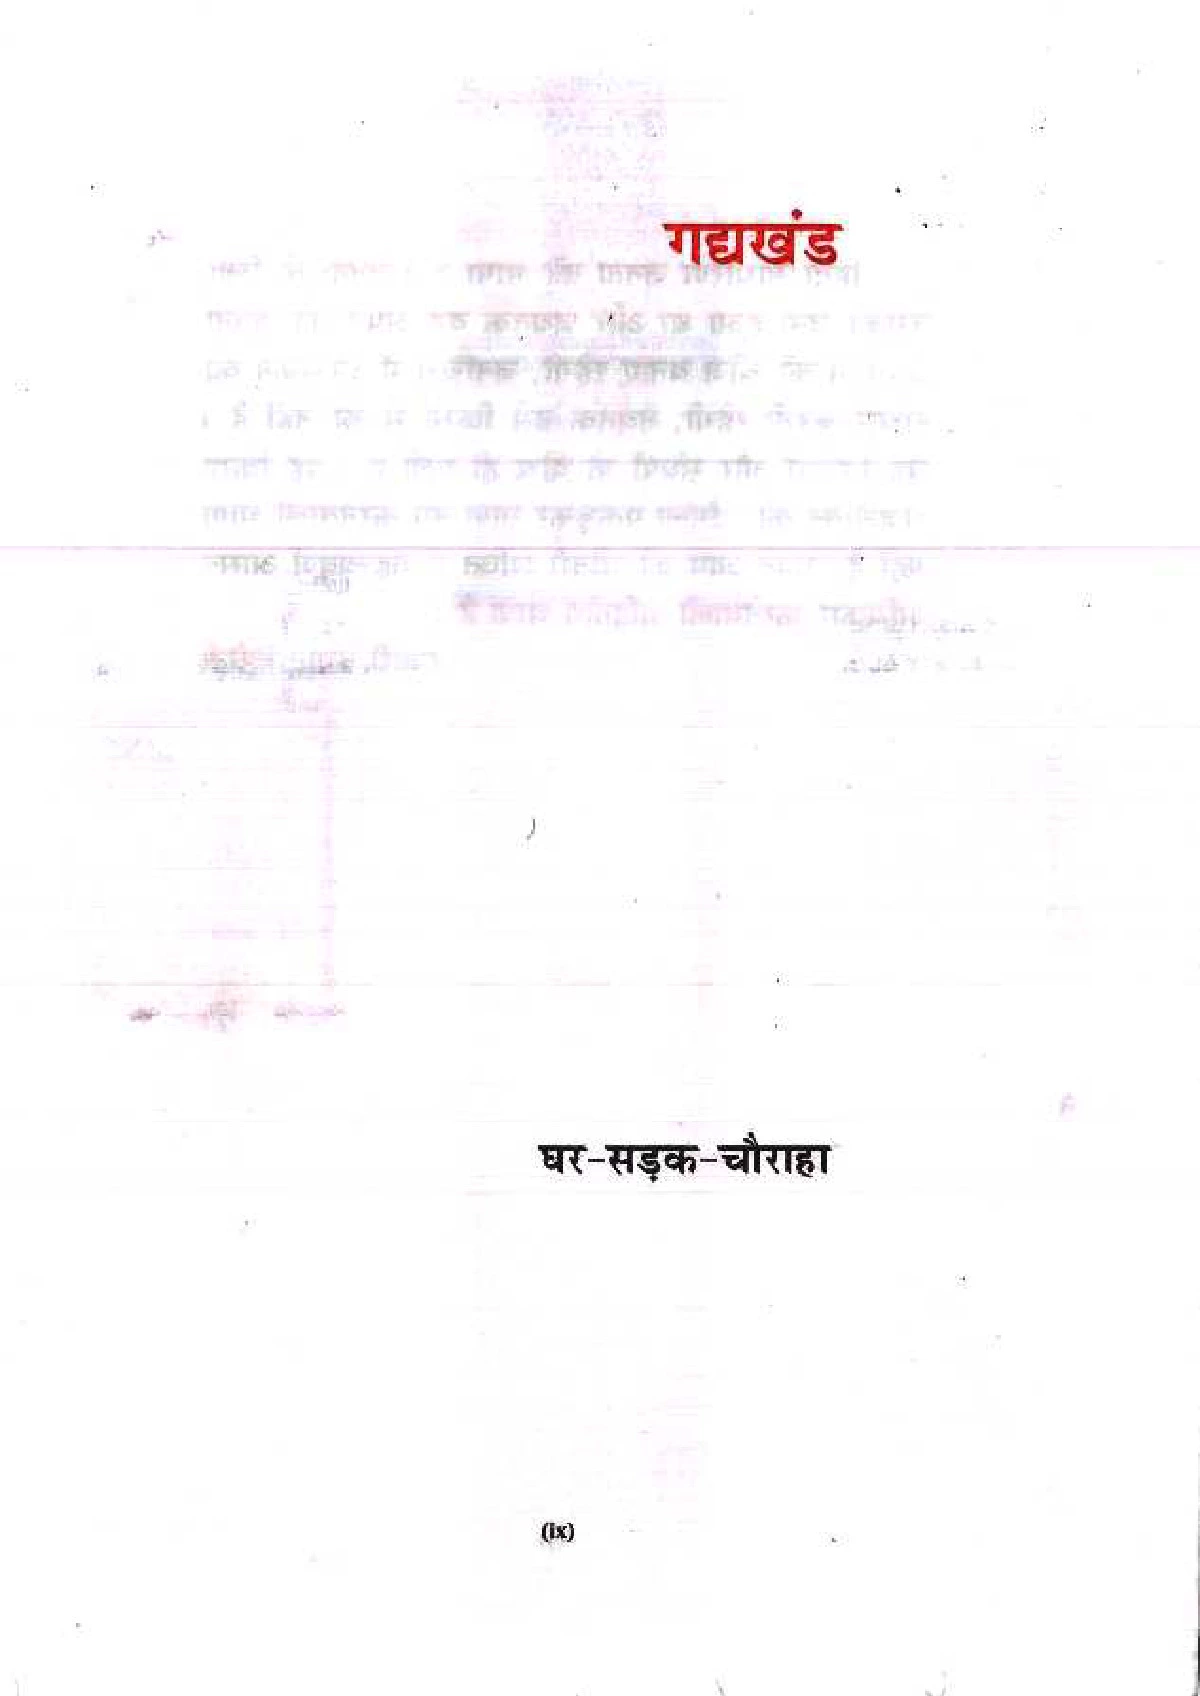 Bihar Board Hindi Godhuli Book Class 10